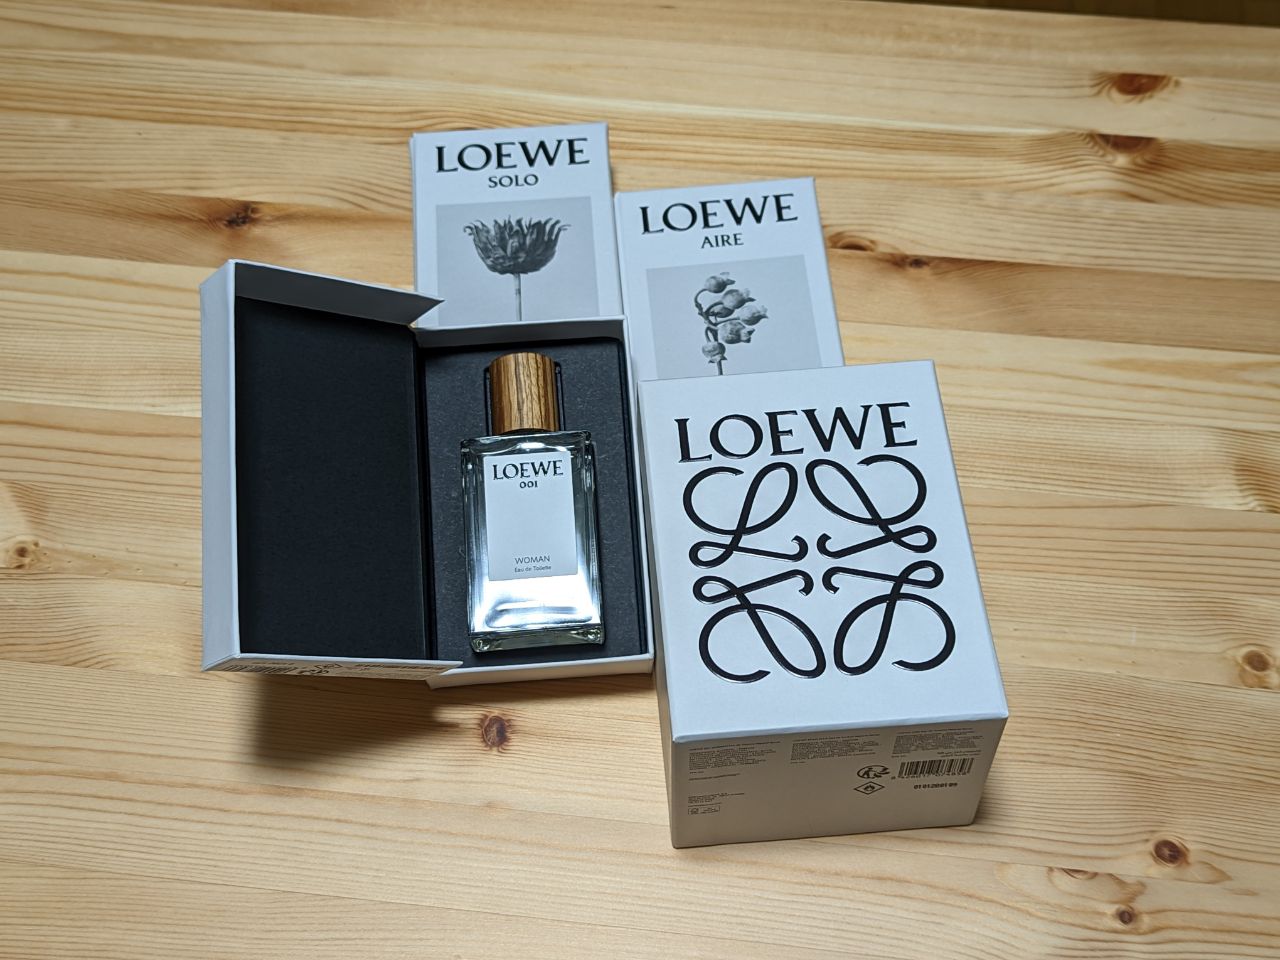 【ロエベ】ウィメンズ香水 トリオセット（001/SOLO/AIRE）を購入【LOEWE】